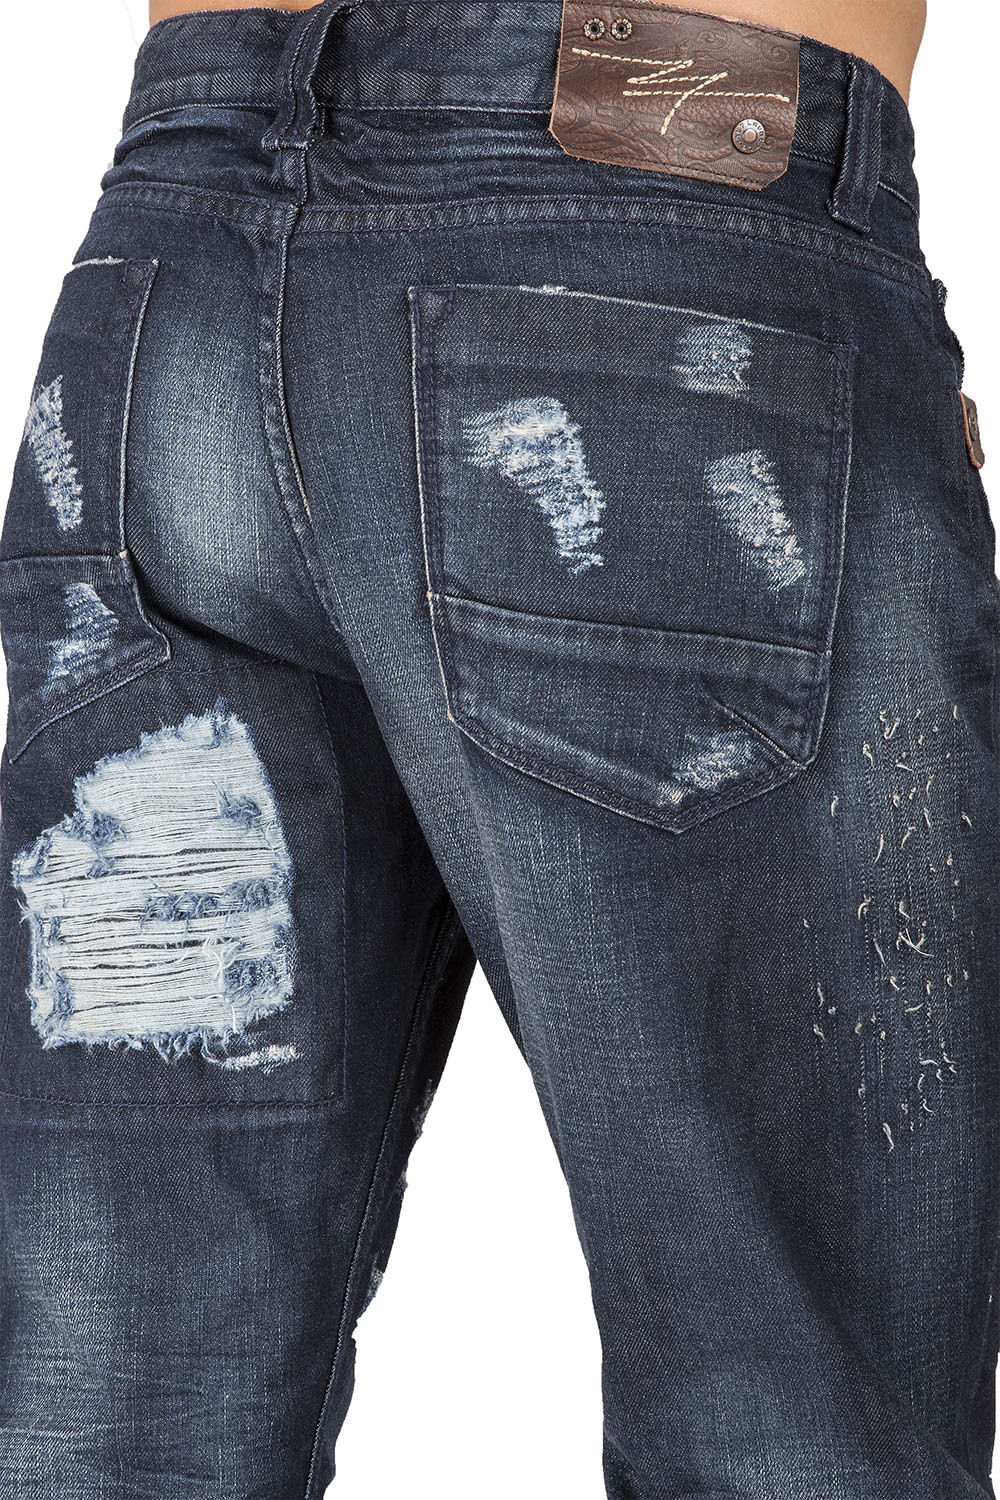 Slim Straight Dark Blue Indigo Premium Denim Signature 5 Pocket Jeans Destroyed & Repaired